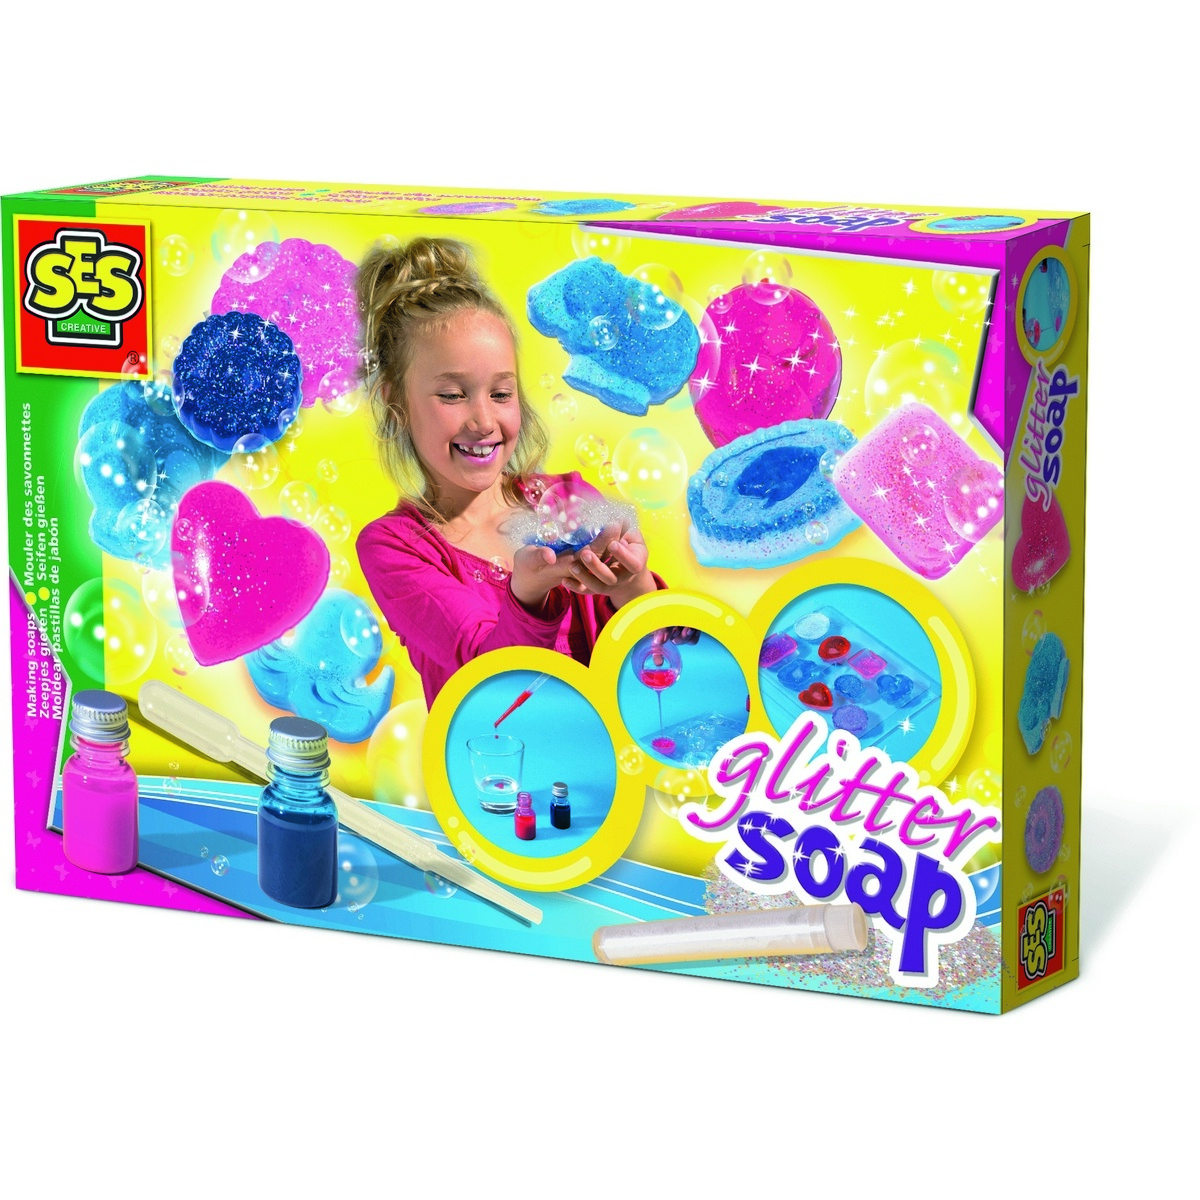 Kit Ses de fabricare sapunuri colorate